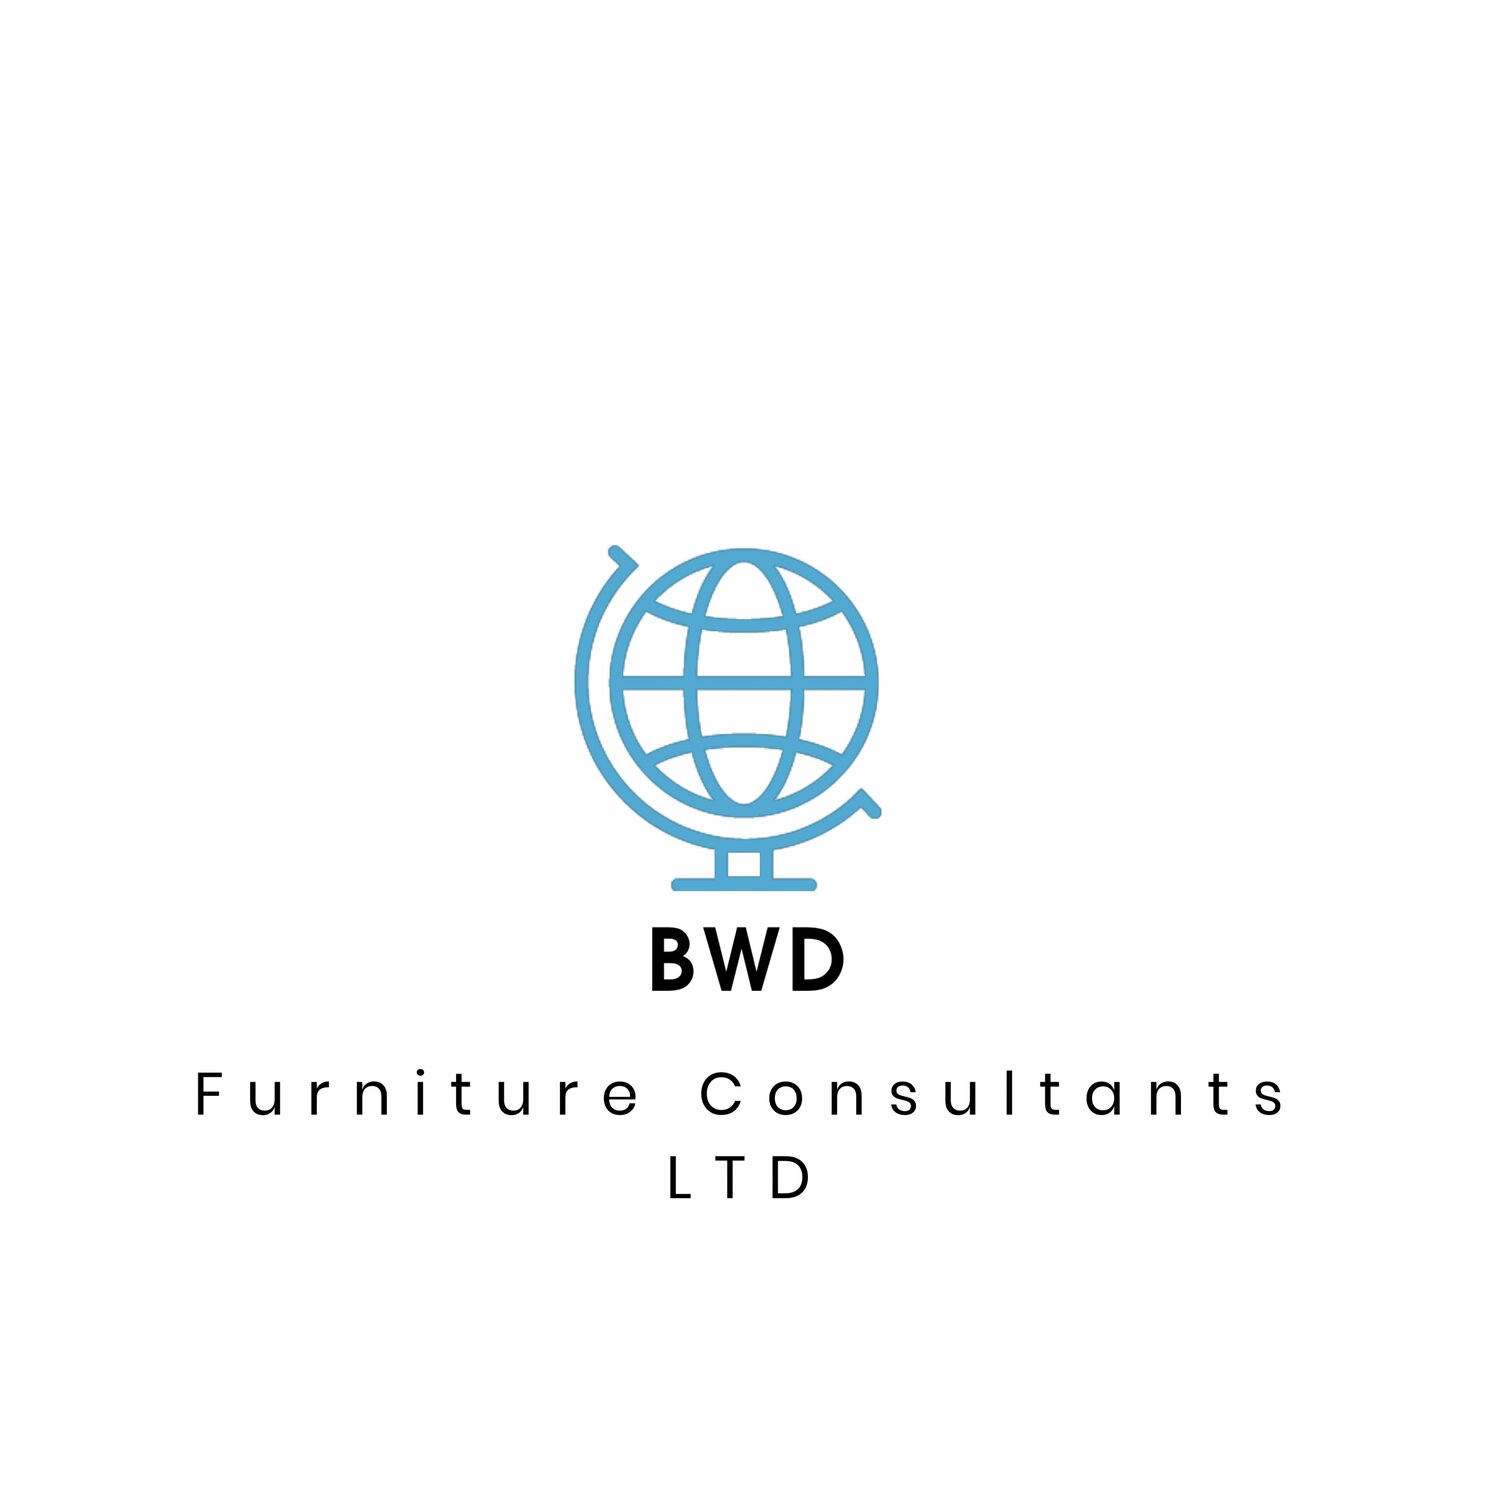 BWD Furniture Consultants Ltd